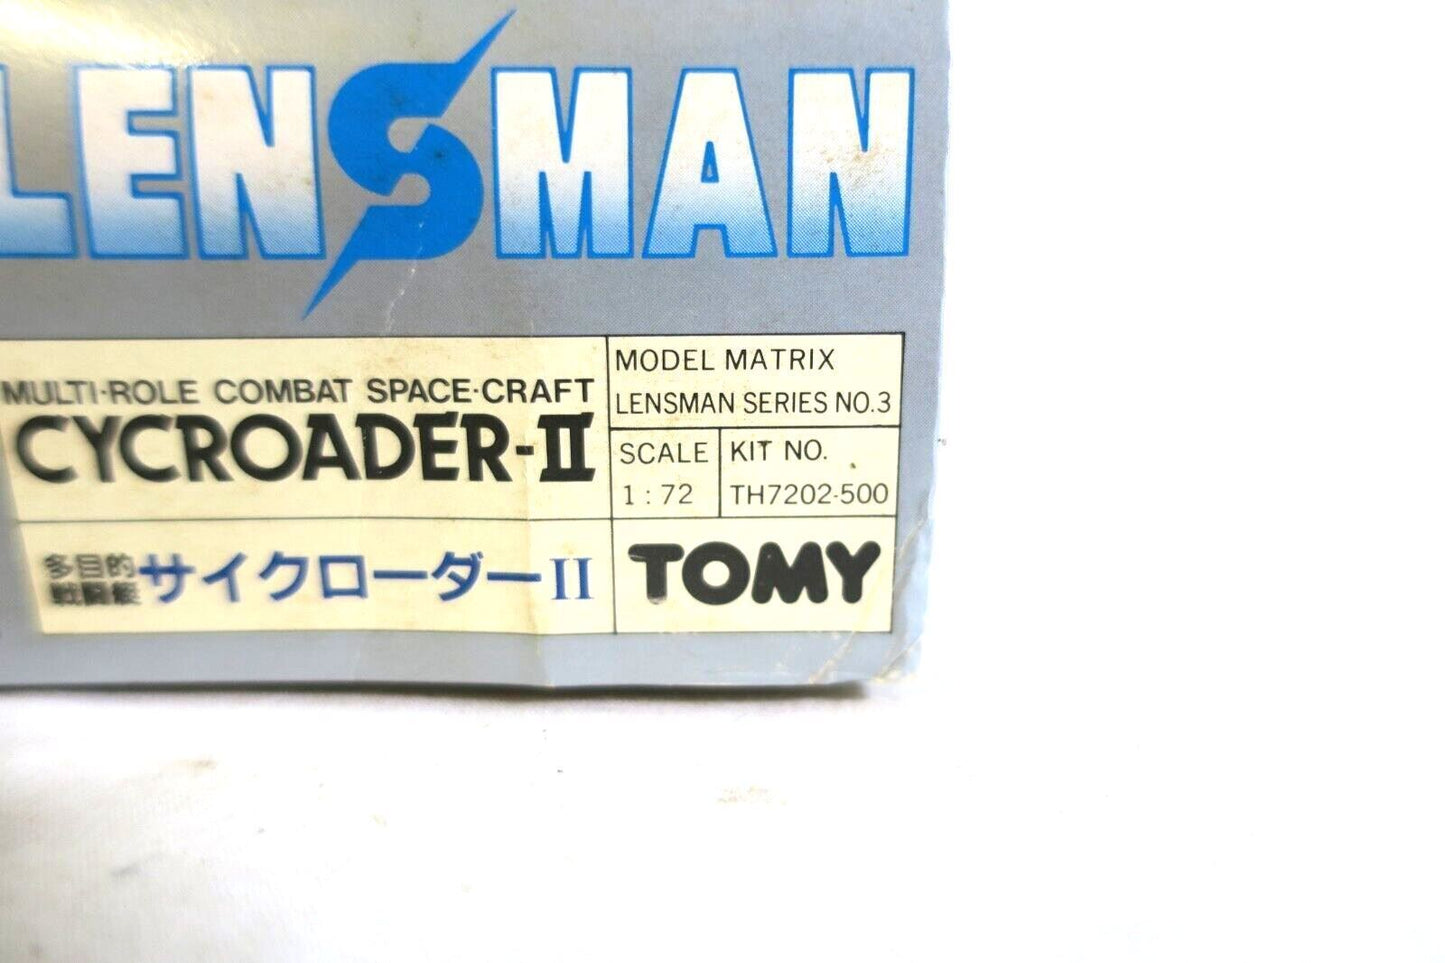 Lensman Cycroader II Tomy Space Vintage Model Kit (F8)